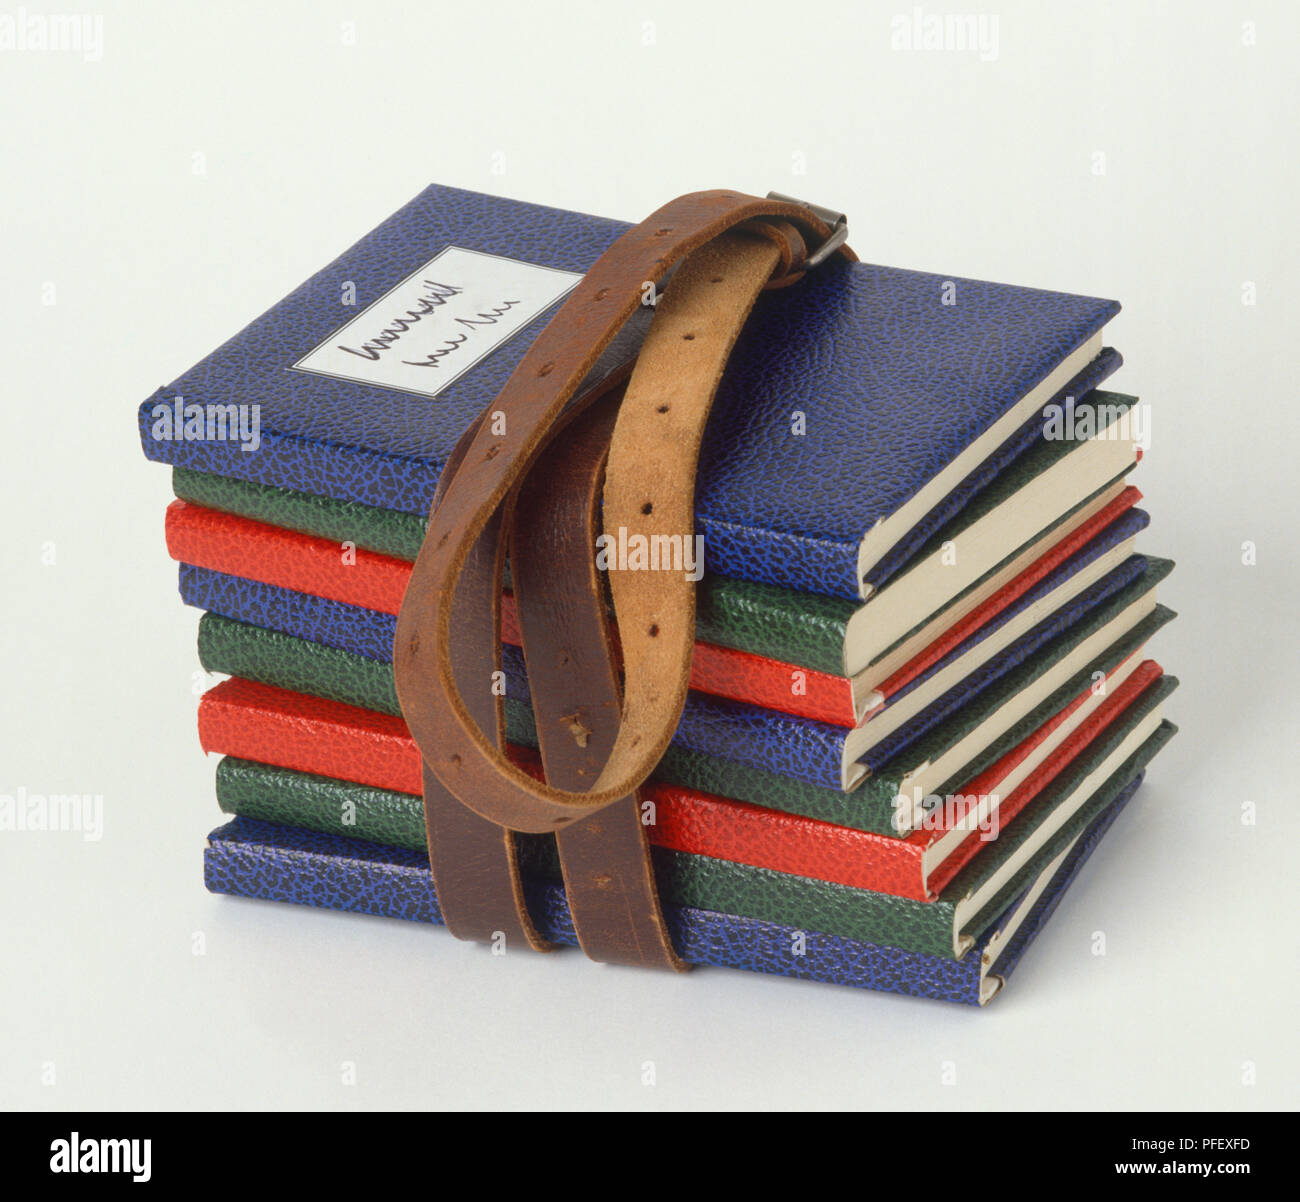 Stapel Bücher mit bunten Leder zusammen mit braunem Leder Gürtel geschnallt, Seitenansicht Stockfoto